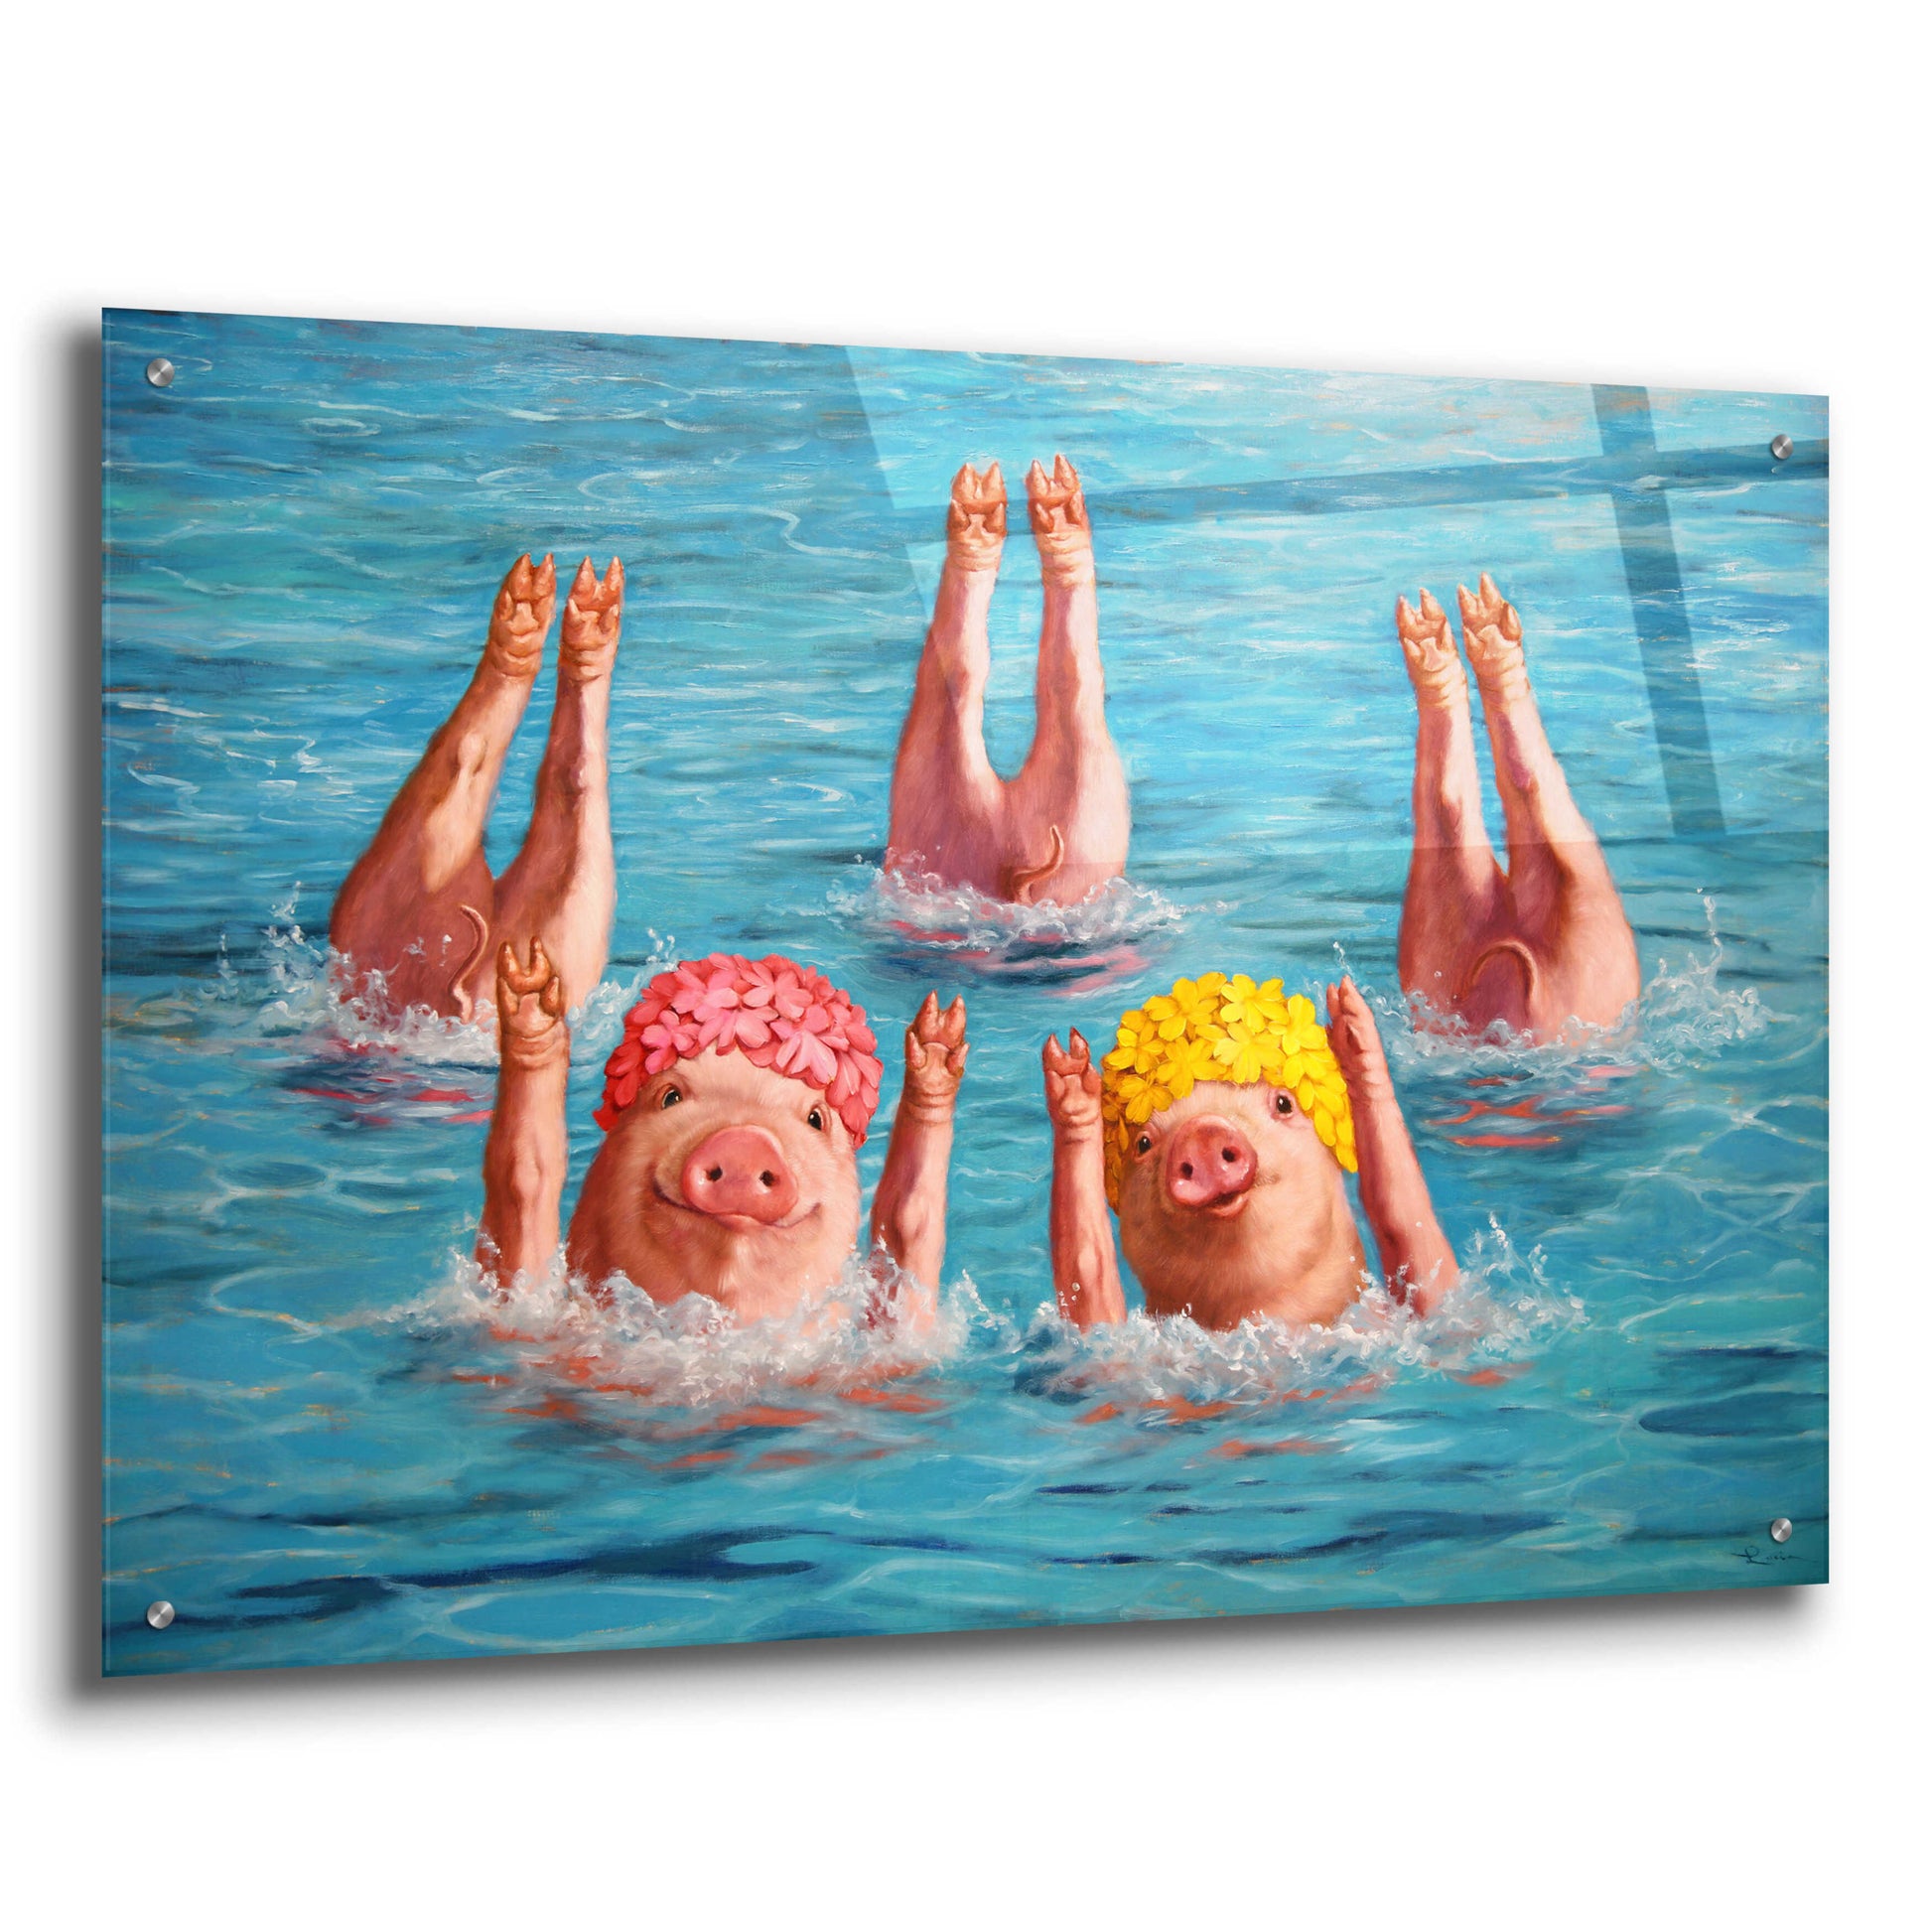 Epic Art 'Water Ballet' by Lucia Heffernan,36x24